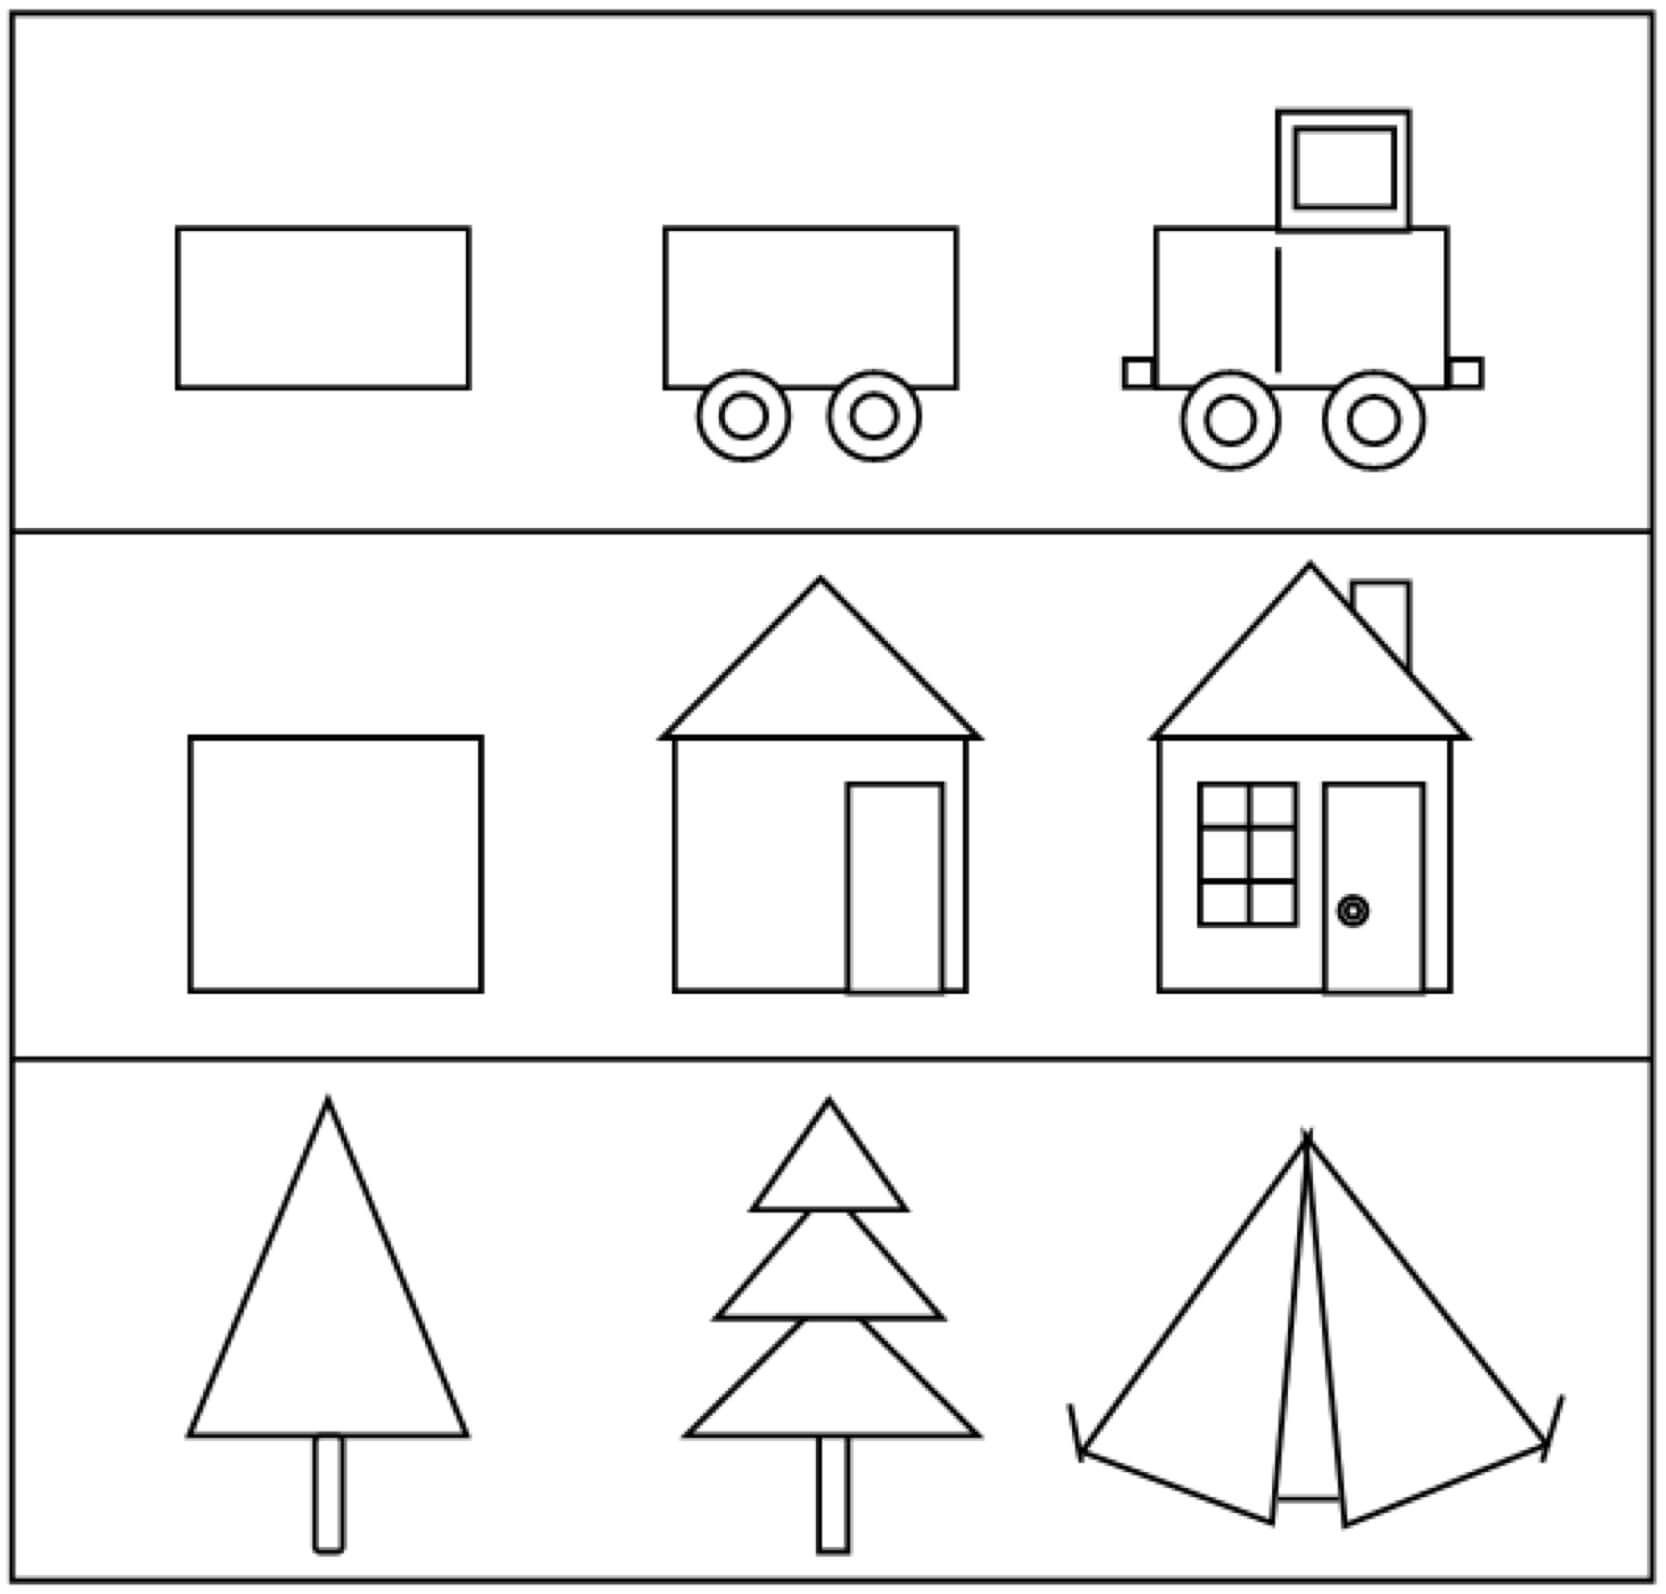 Dạy vẽ cơ bản cho trẻ em với các hình khối đơn giản